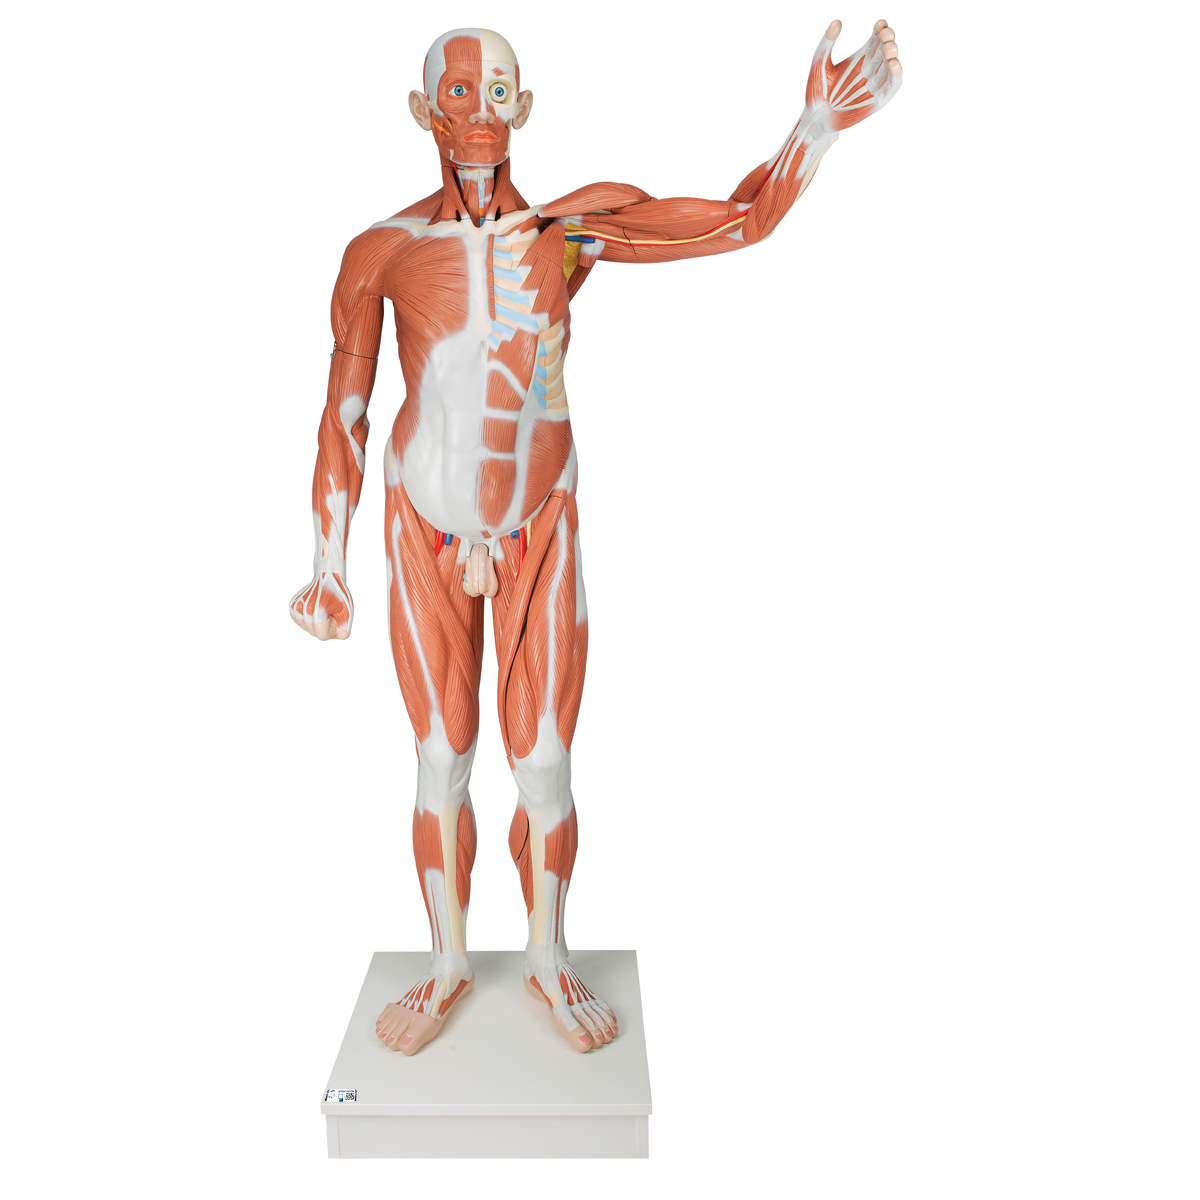 Lebensgroße männliche Muskelfigur, 37-teilig - 3B Smart Anatomy, Bestellnummer 1001235, VA01, 3B Scientific